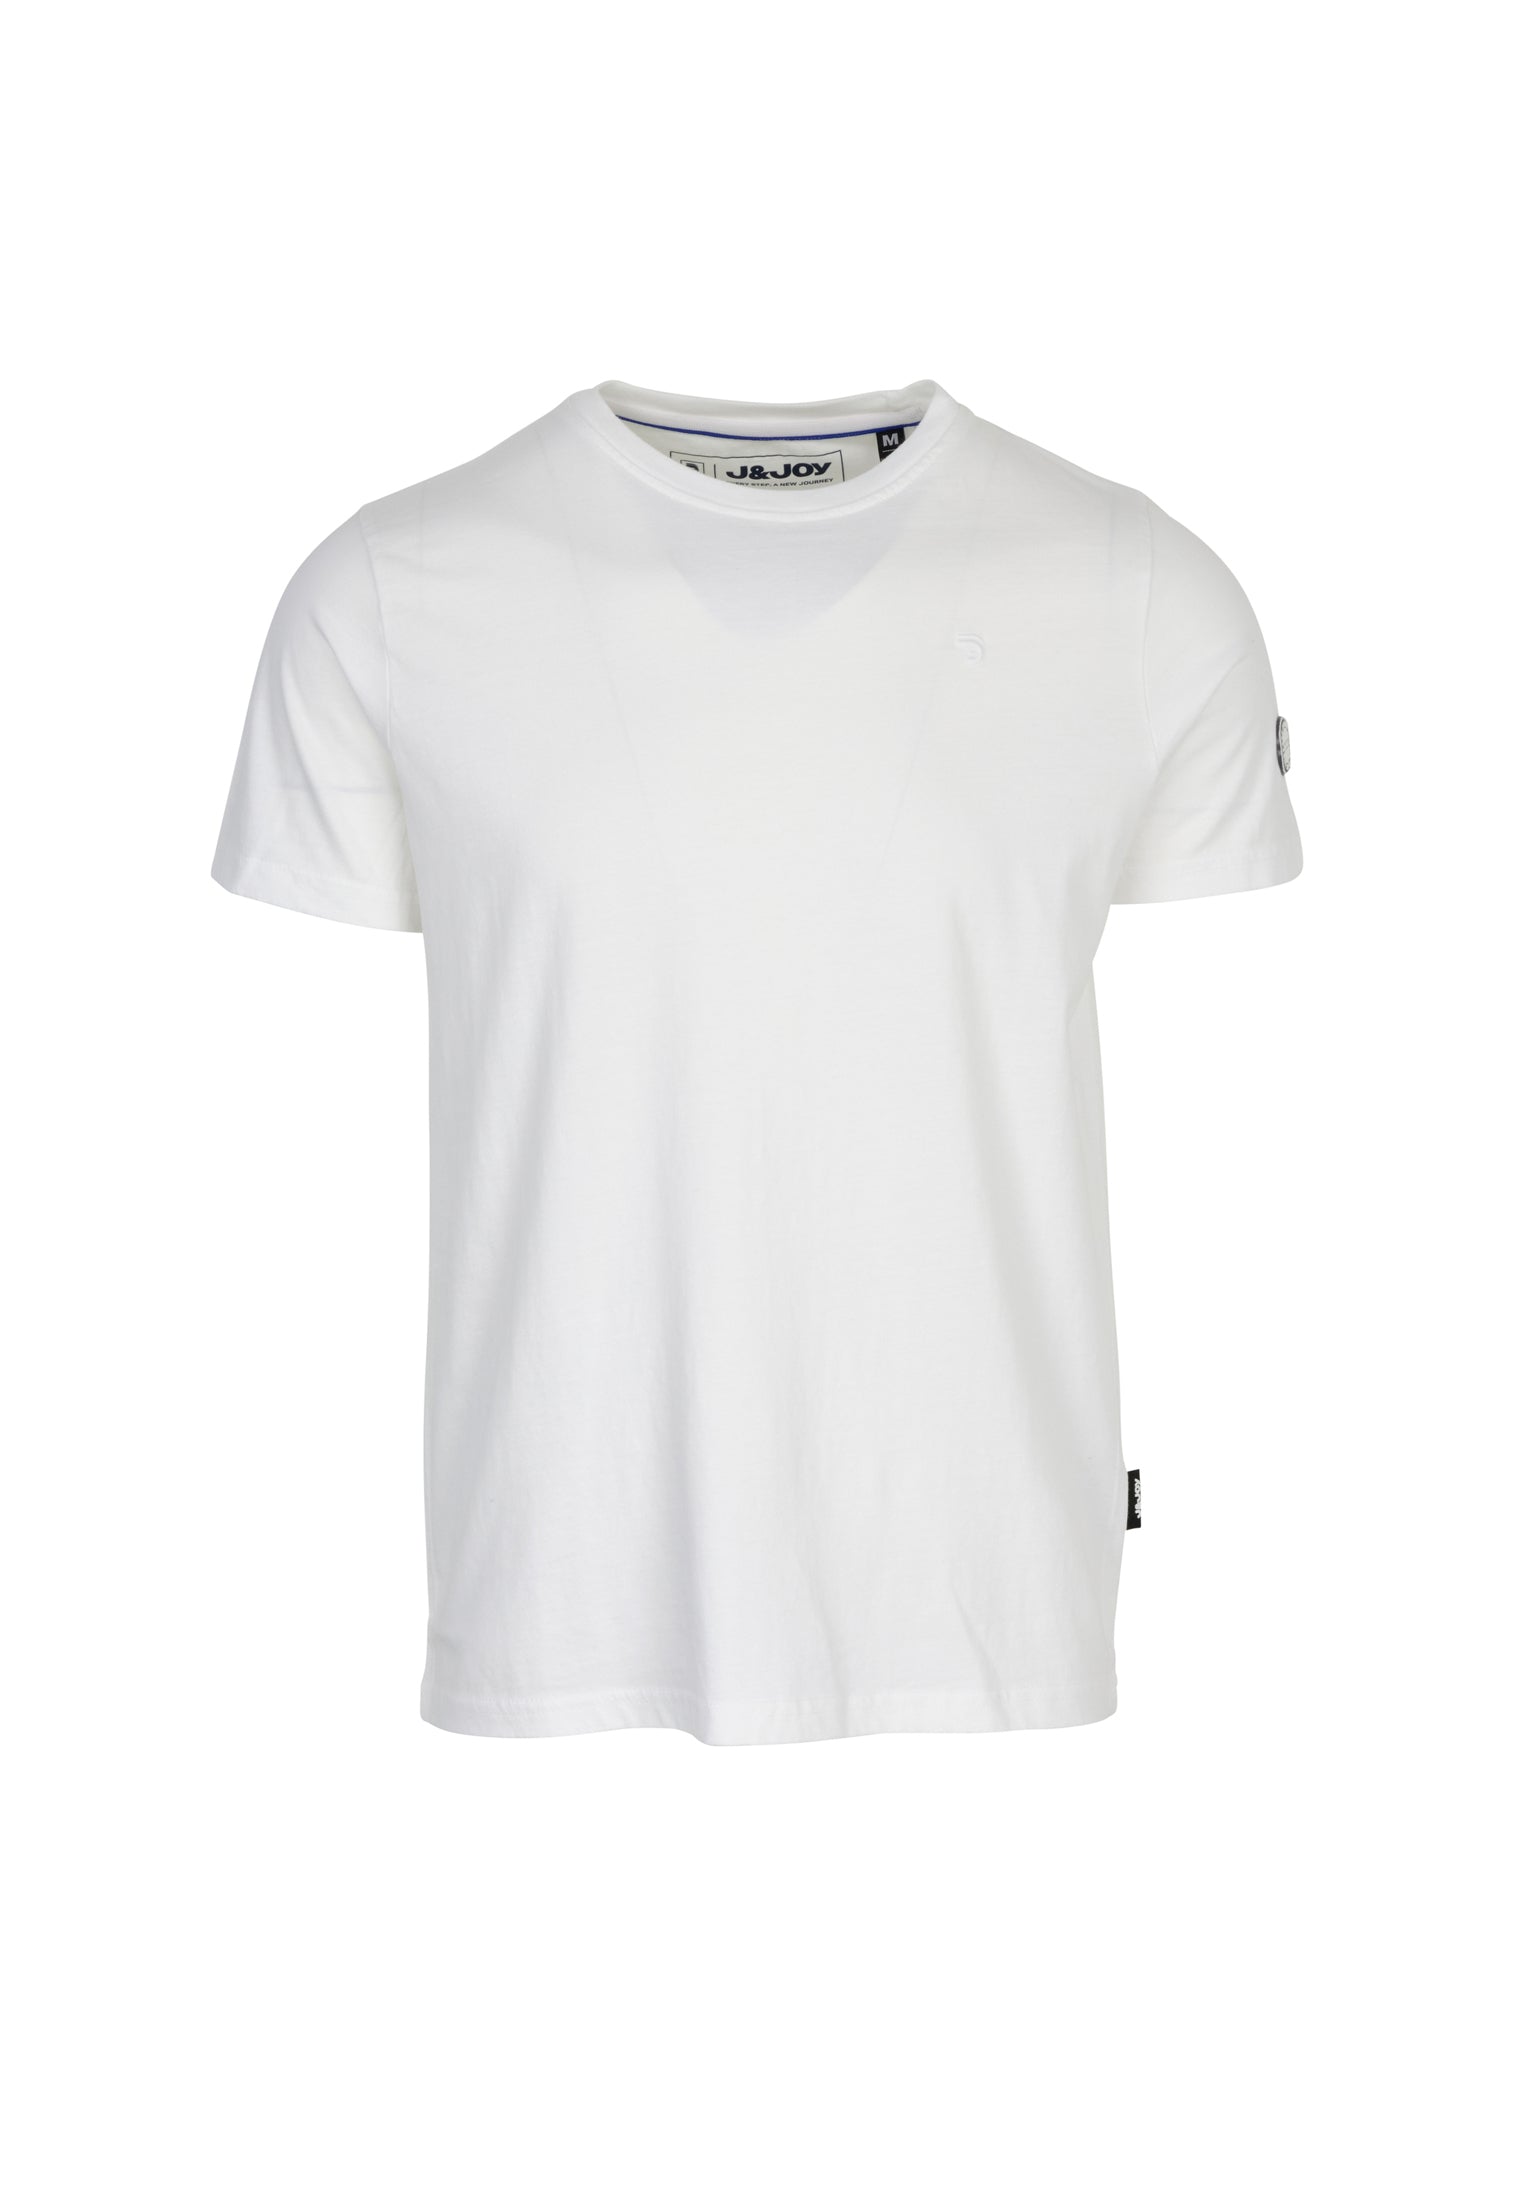 T-Shirt Homme Essentials 06 White | J&JOY.